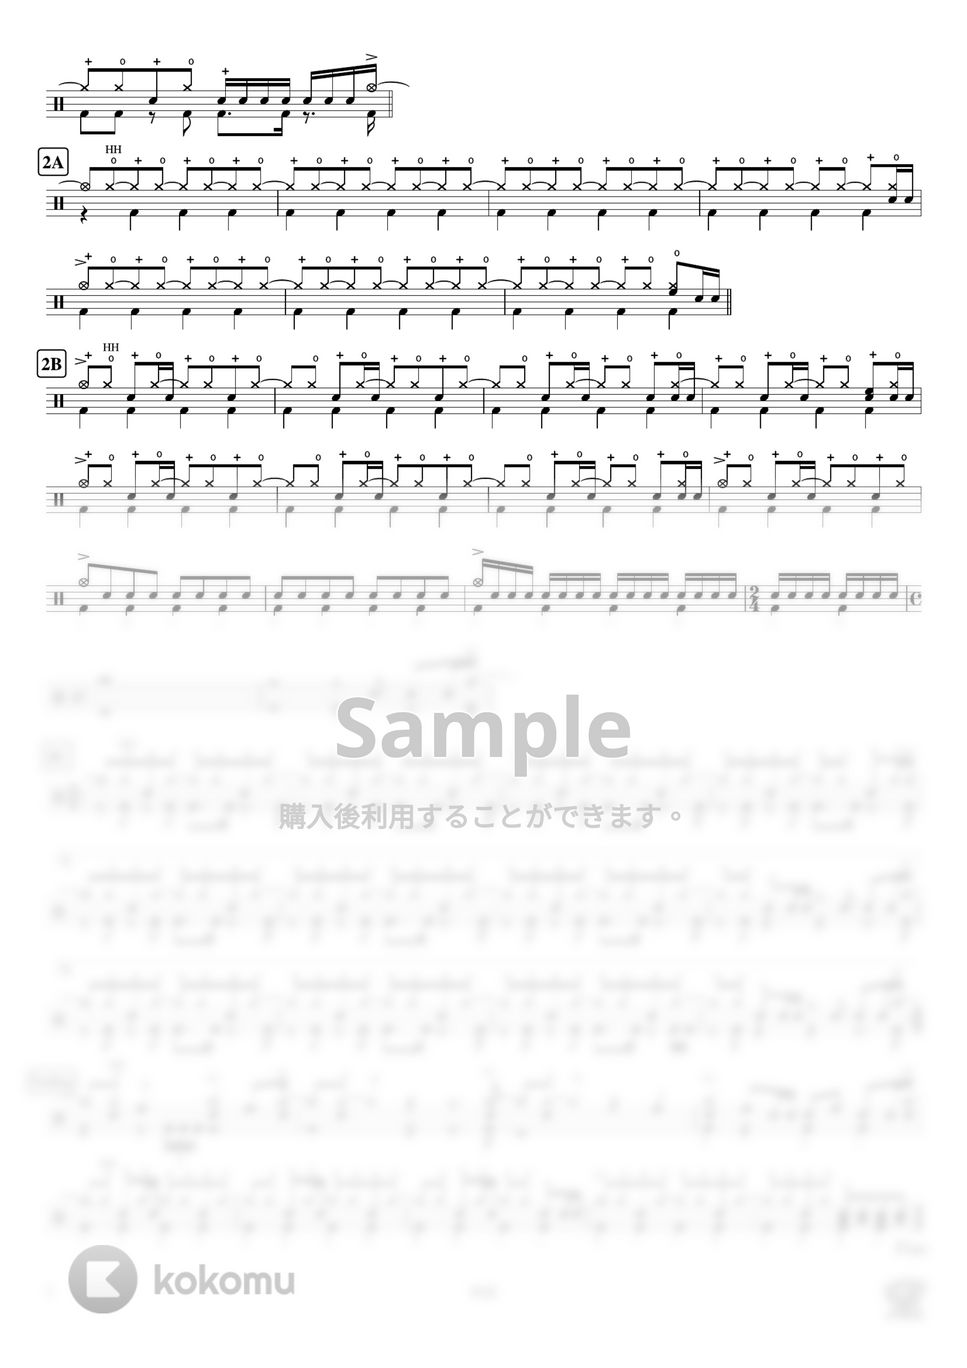 back number - 怪盗 (ドラマ「恋はDeepに」主題歌) by ドラムが好き！